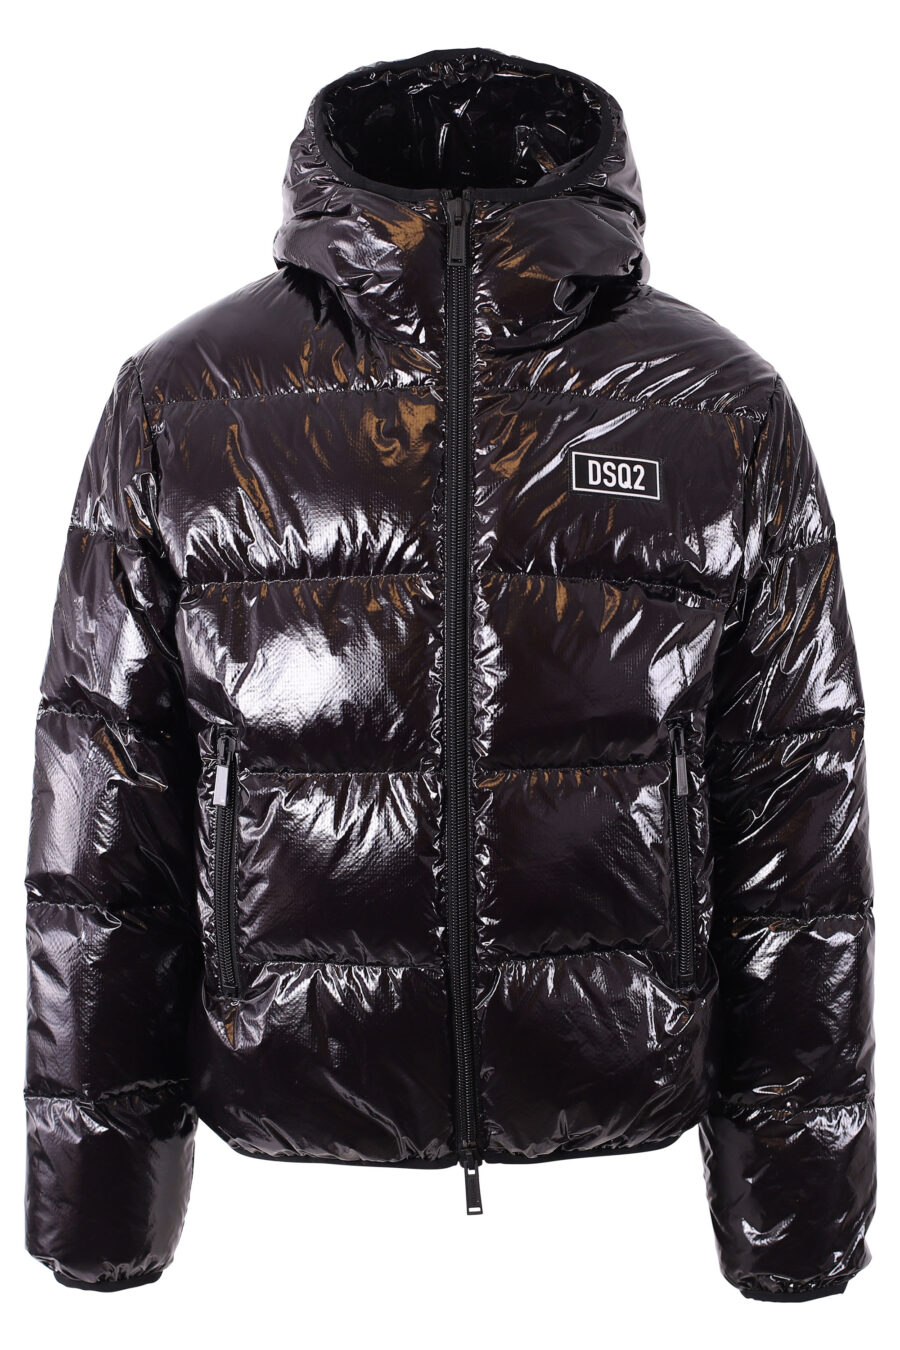 Schwarze glänzende Jacke mit Minilogue - IMG 1092